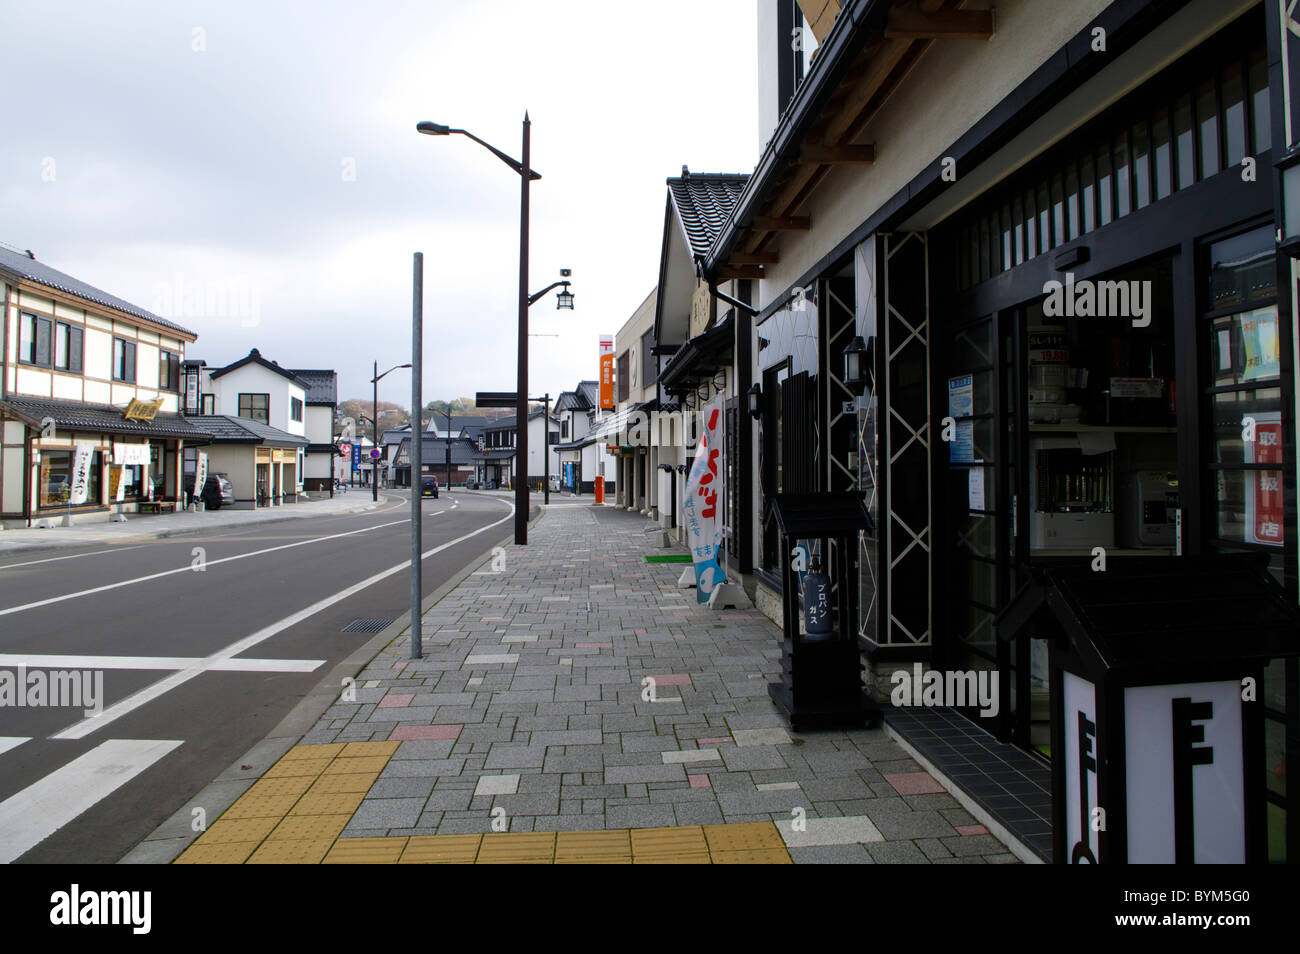 Stadtbild Straße Bürgersteig Store Anmelden japanische Skript Stockfoto